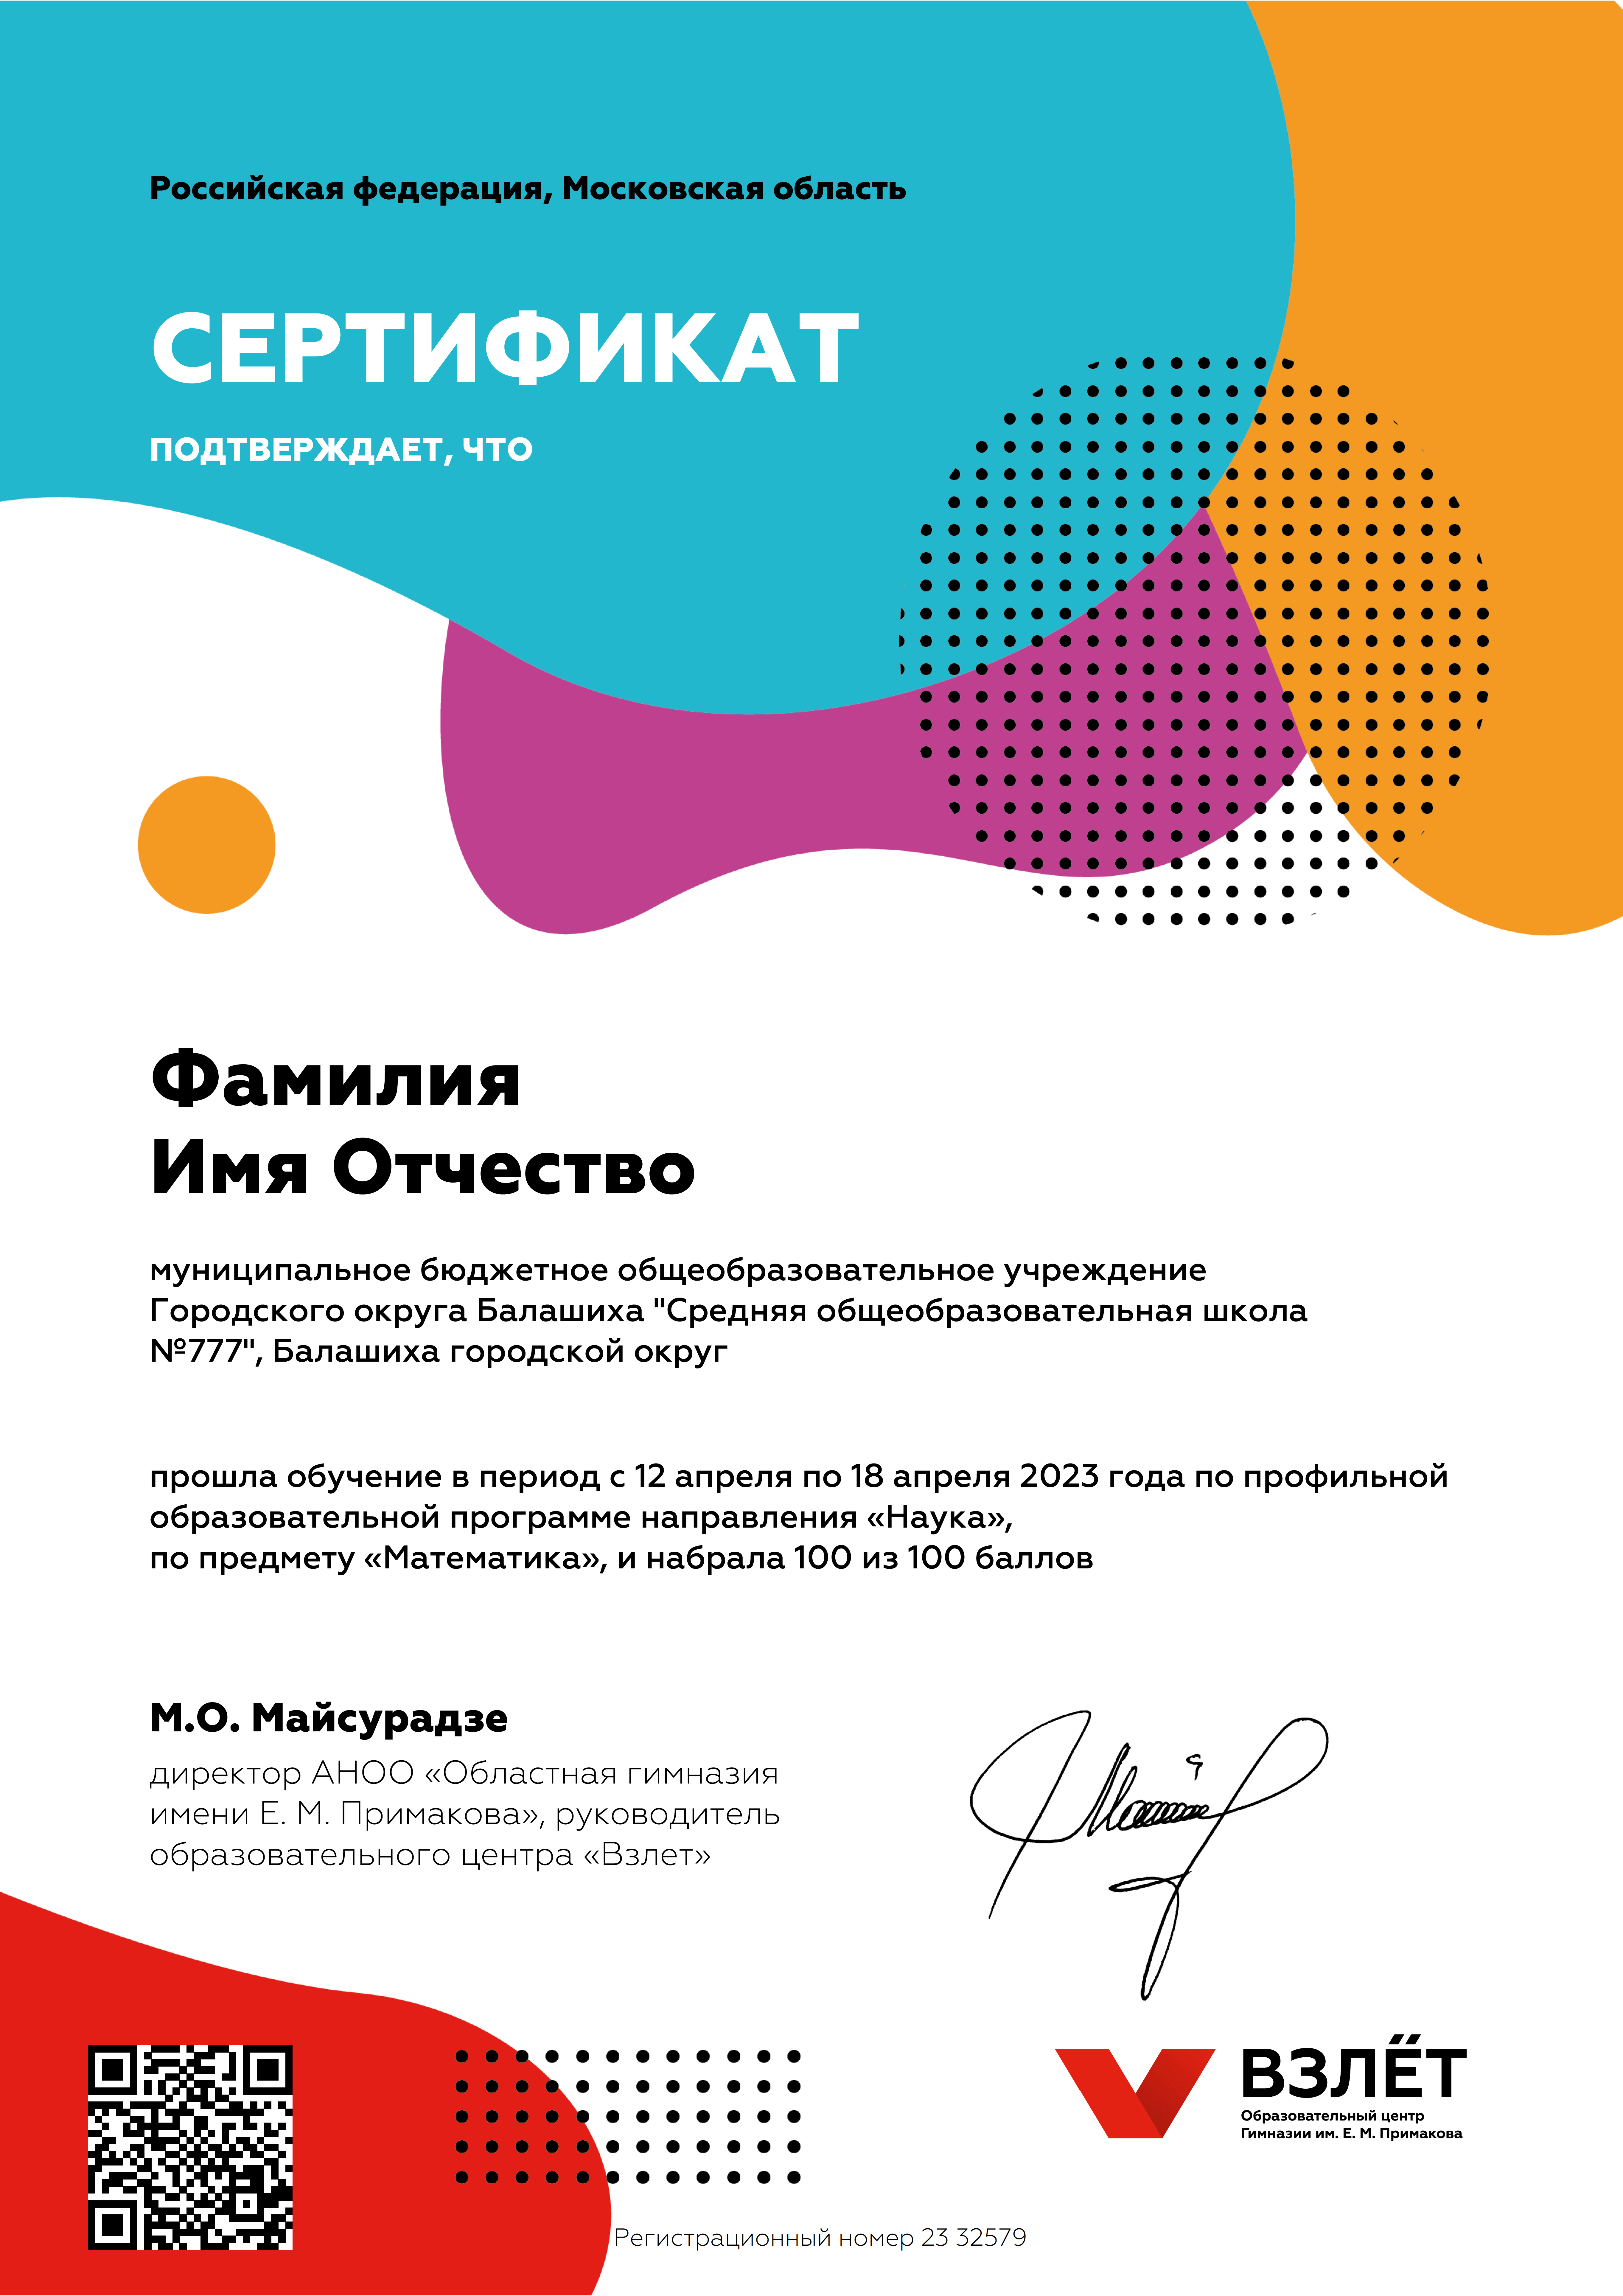 certificates